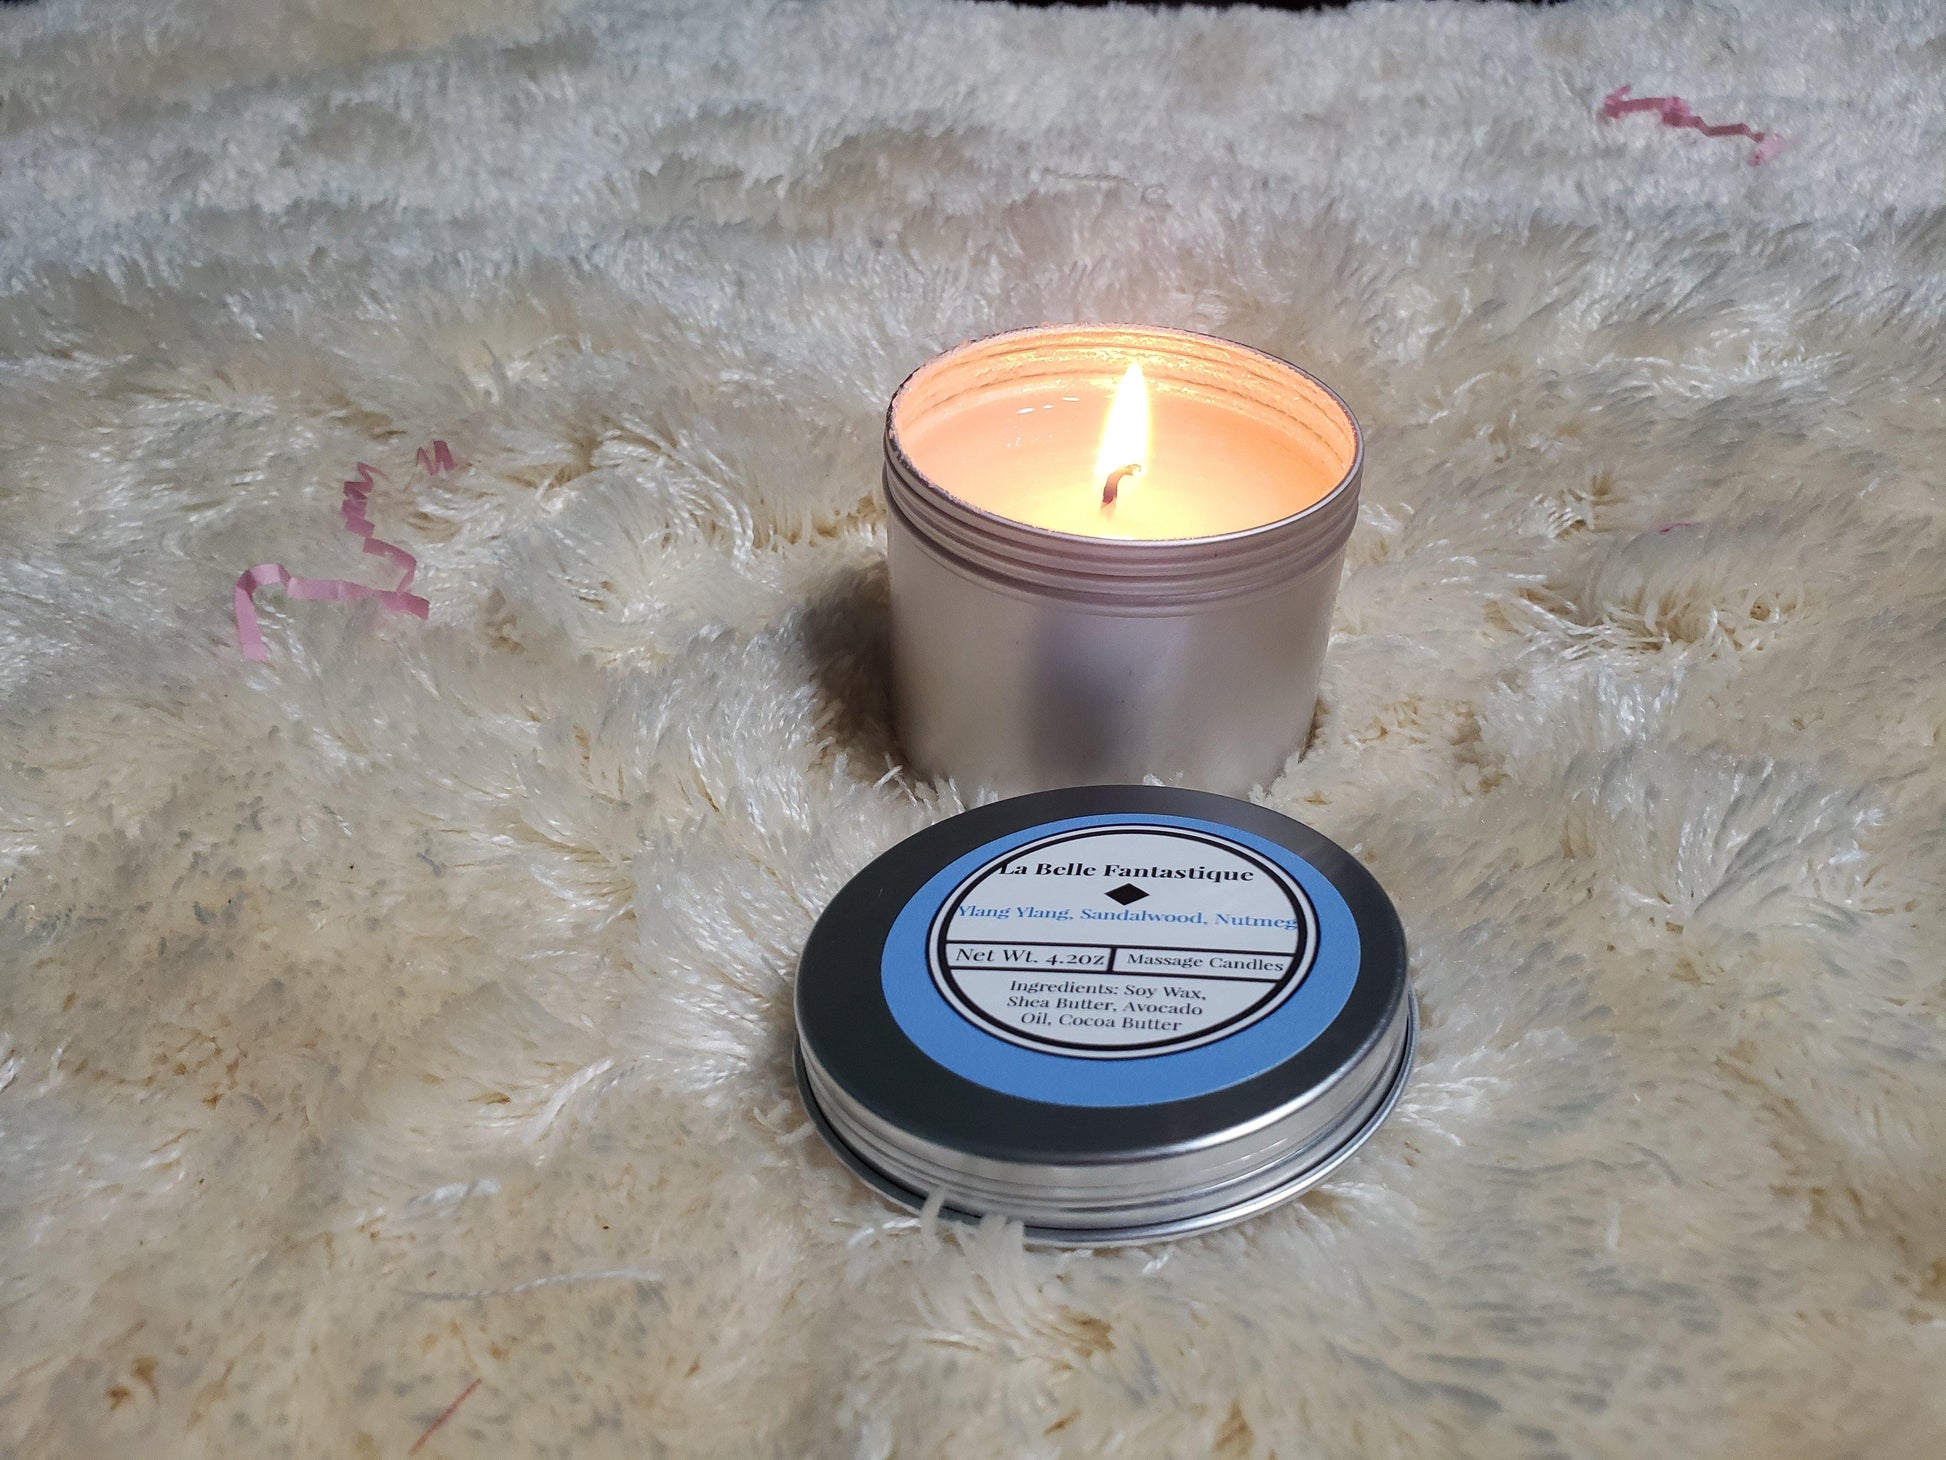 La Belle Fantastique Massage Body Candle that melts into warm, Relaxing, Natural Massage Oil - La Belle Fantastique 